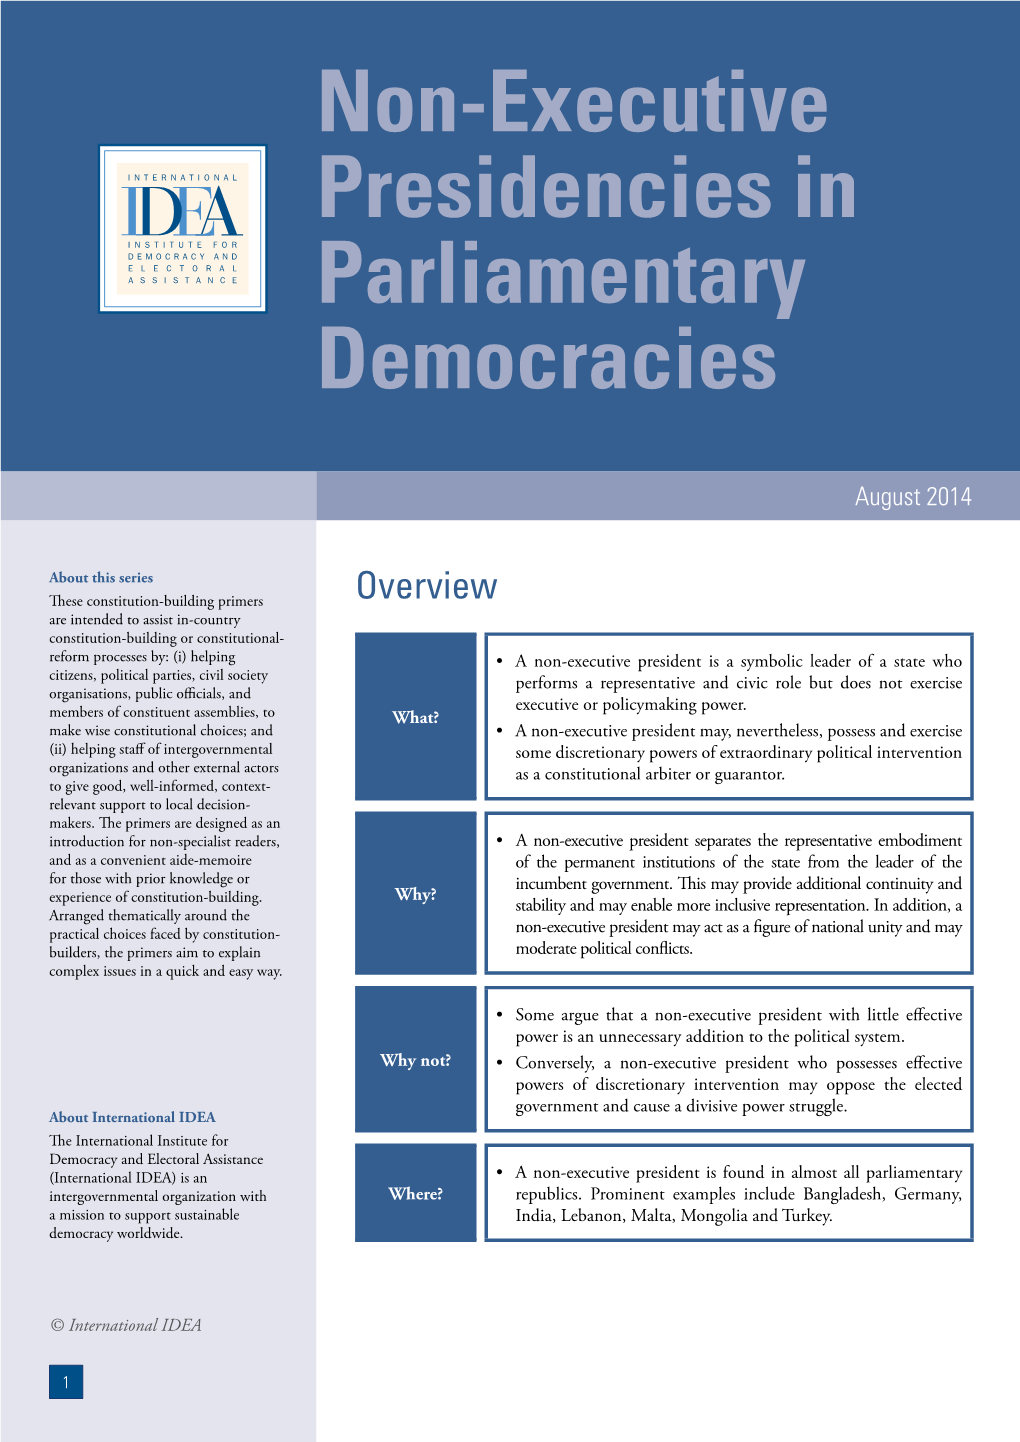 Non-Executive Presidencies in Parliamentary Democracies